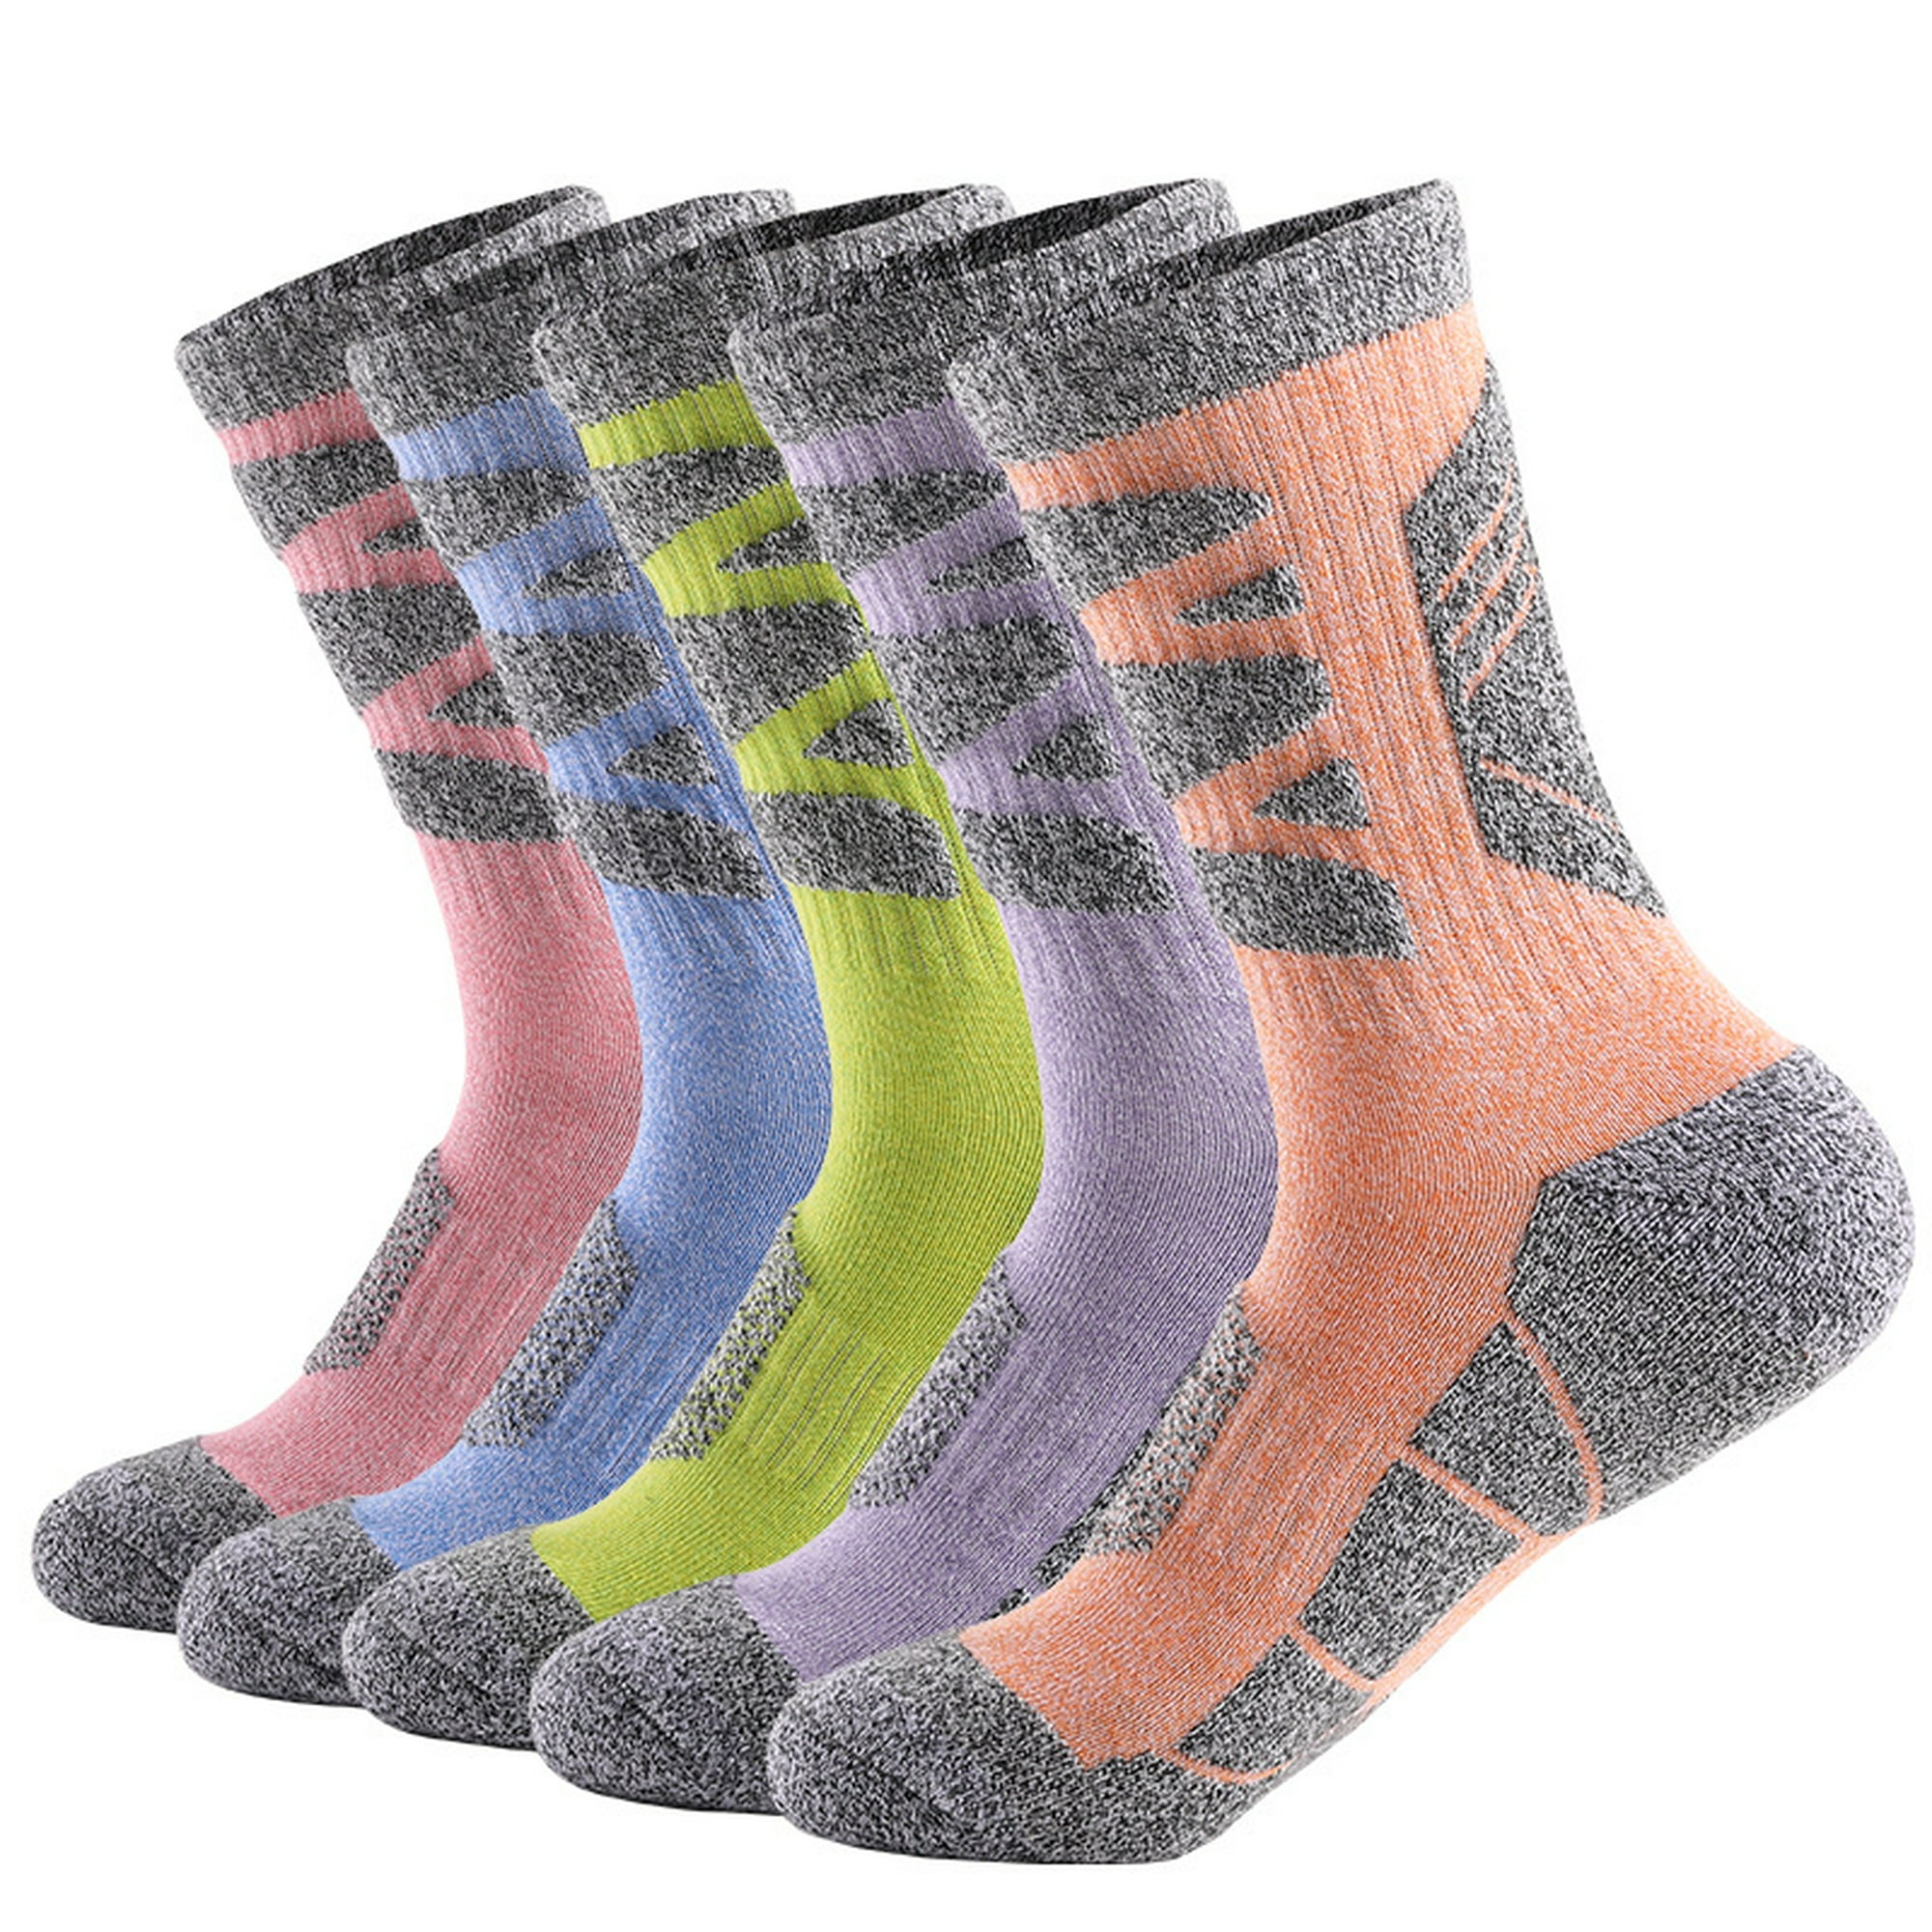 Comprar 5 pares de nuevos calcetines de lana para mujer, moda multicolor,  calcetines de lana para otoño e invierno, calcetines largos gruesos cálidos  para mujer